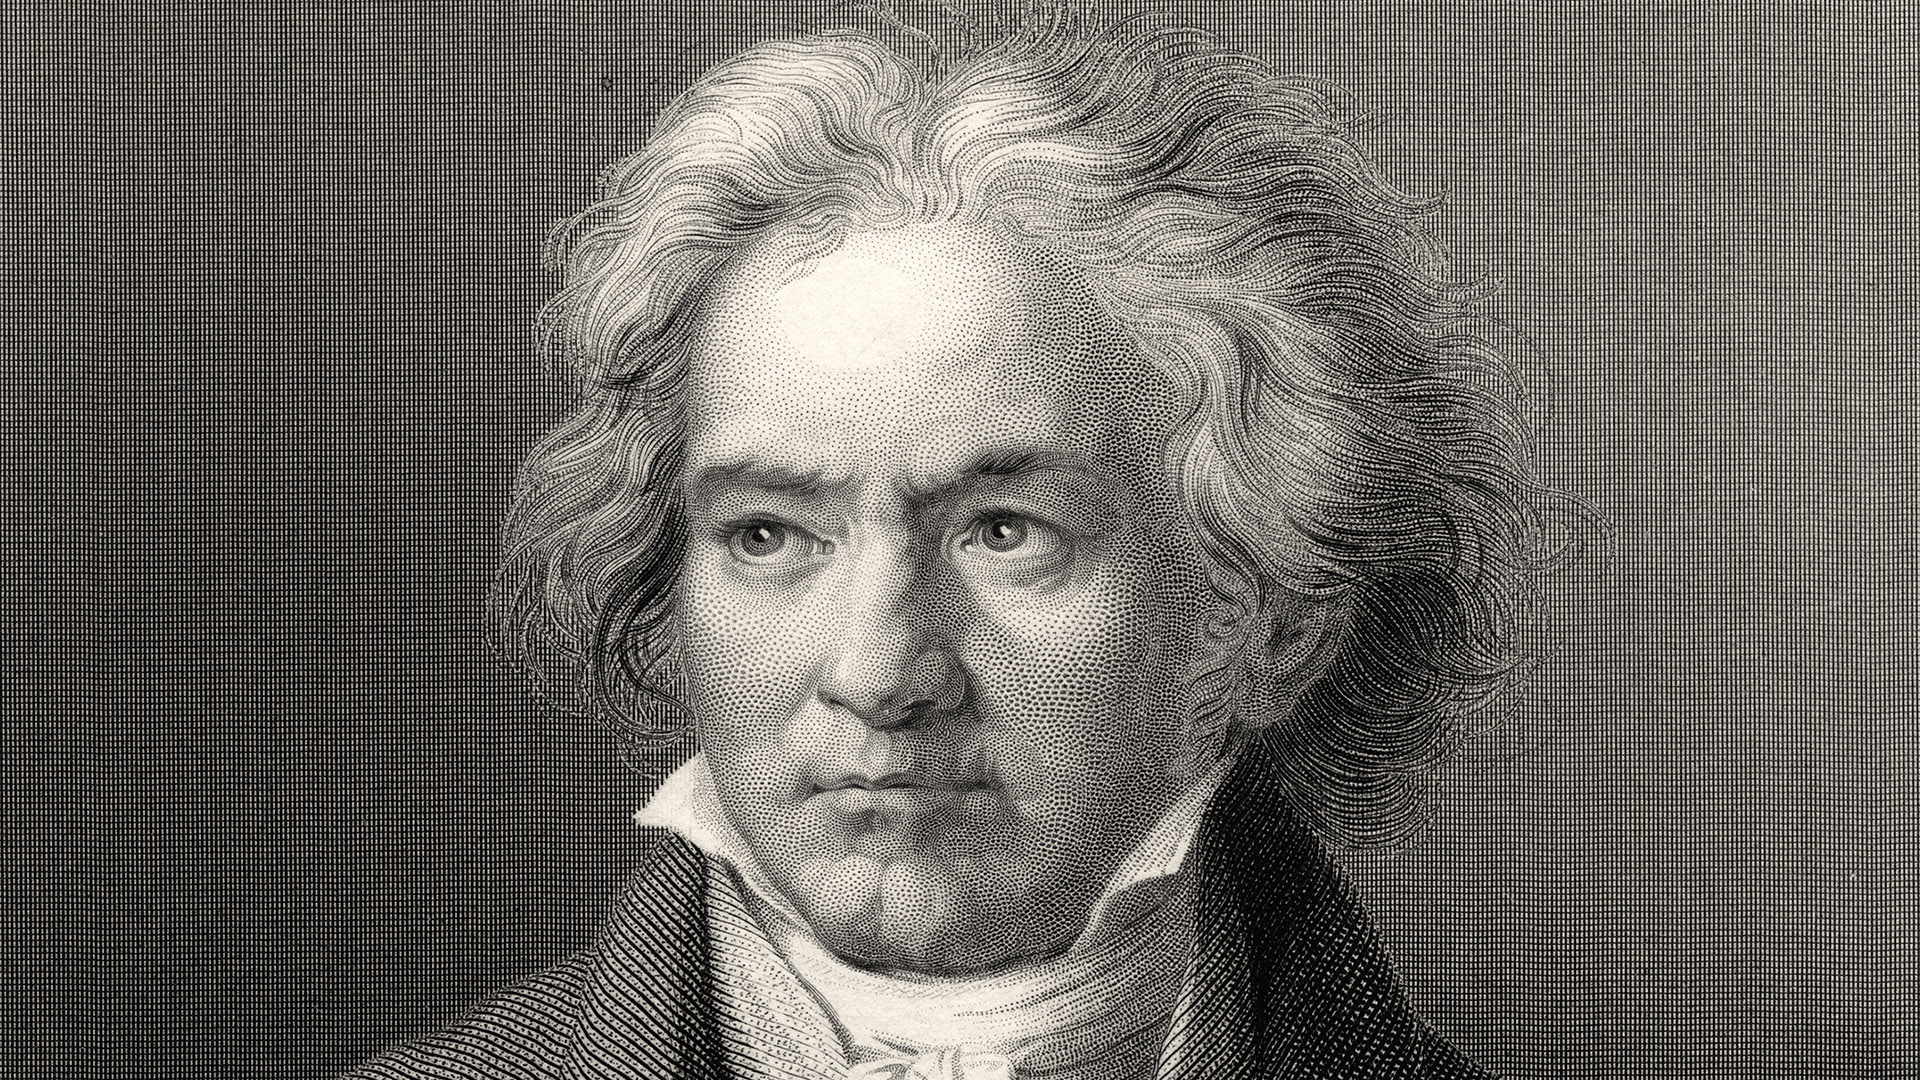 "En sus últimos 15 años de vida, Beethoven se enamoró de unas músicas celtas porque veía que iban por fuera de la música clásica", dice Núñez (Foto: The Print Collector/Print Collector/Getty Images)